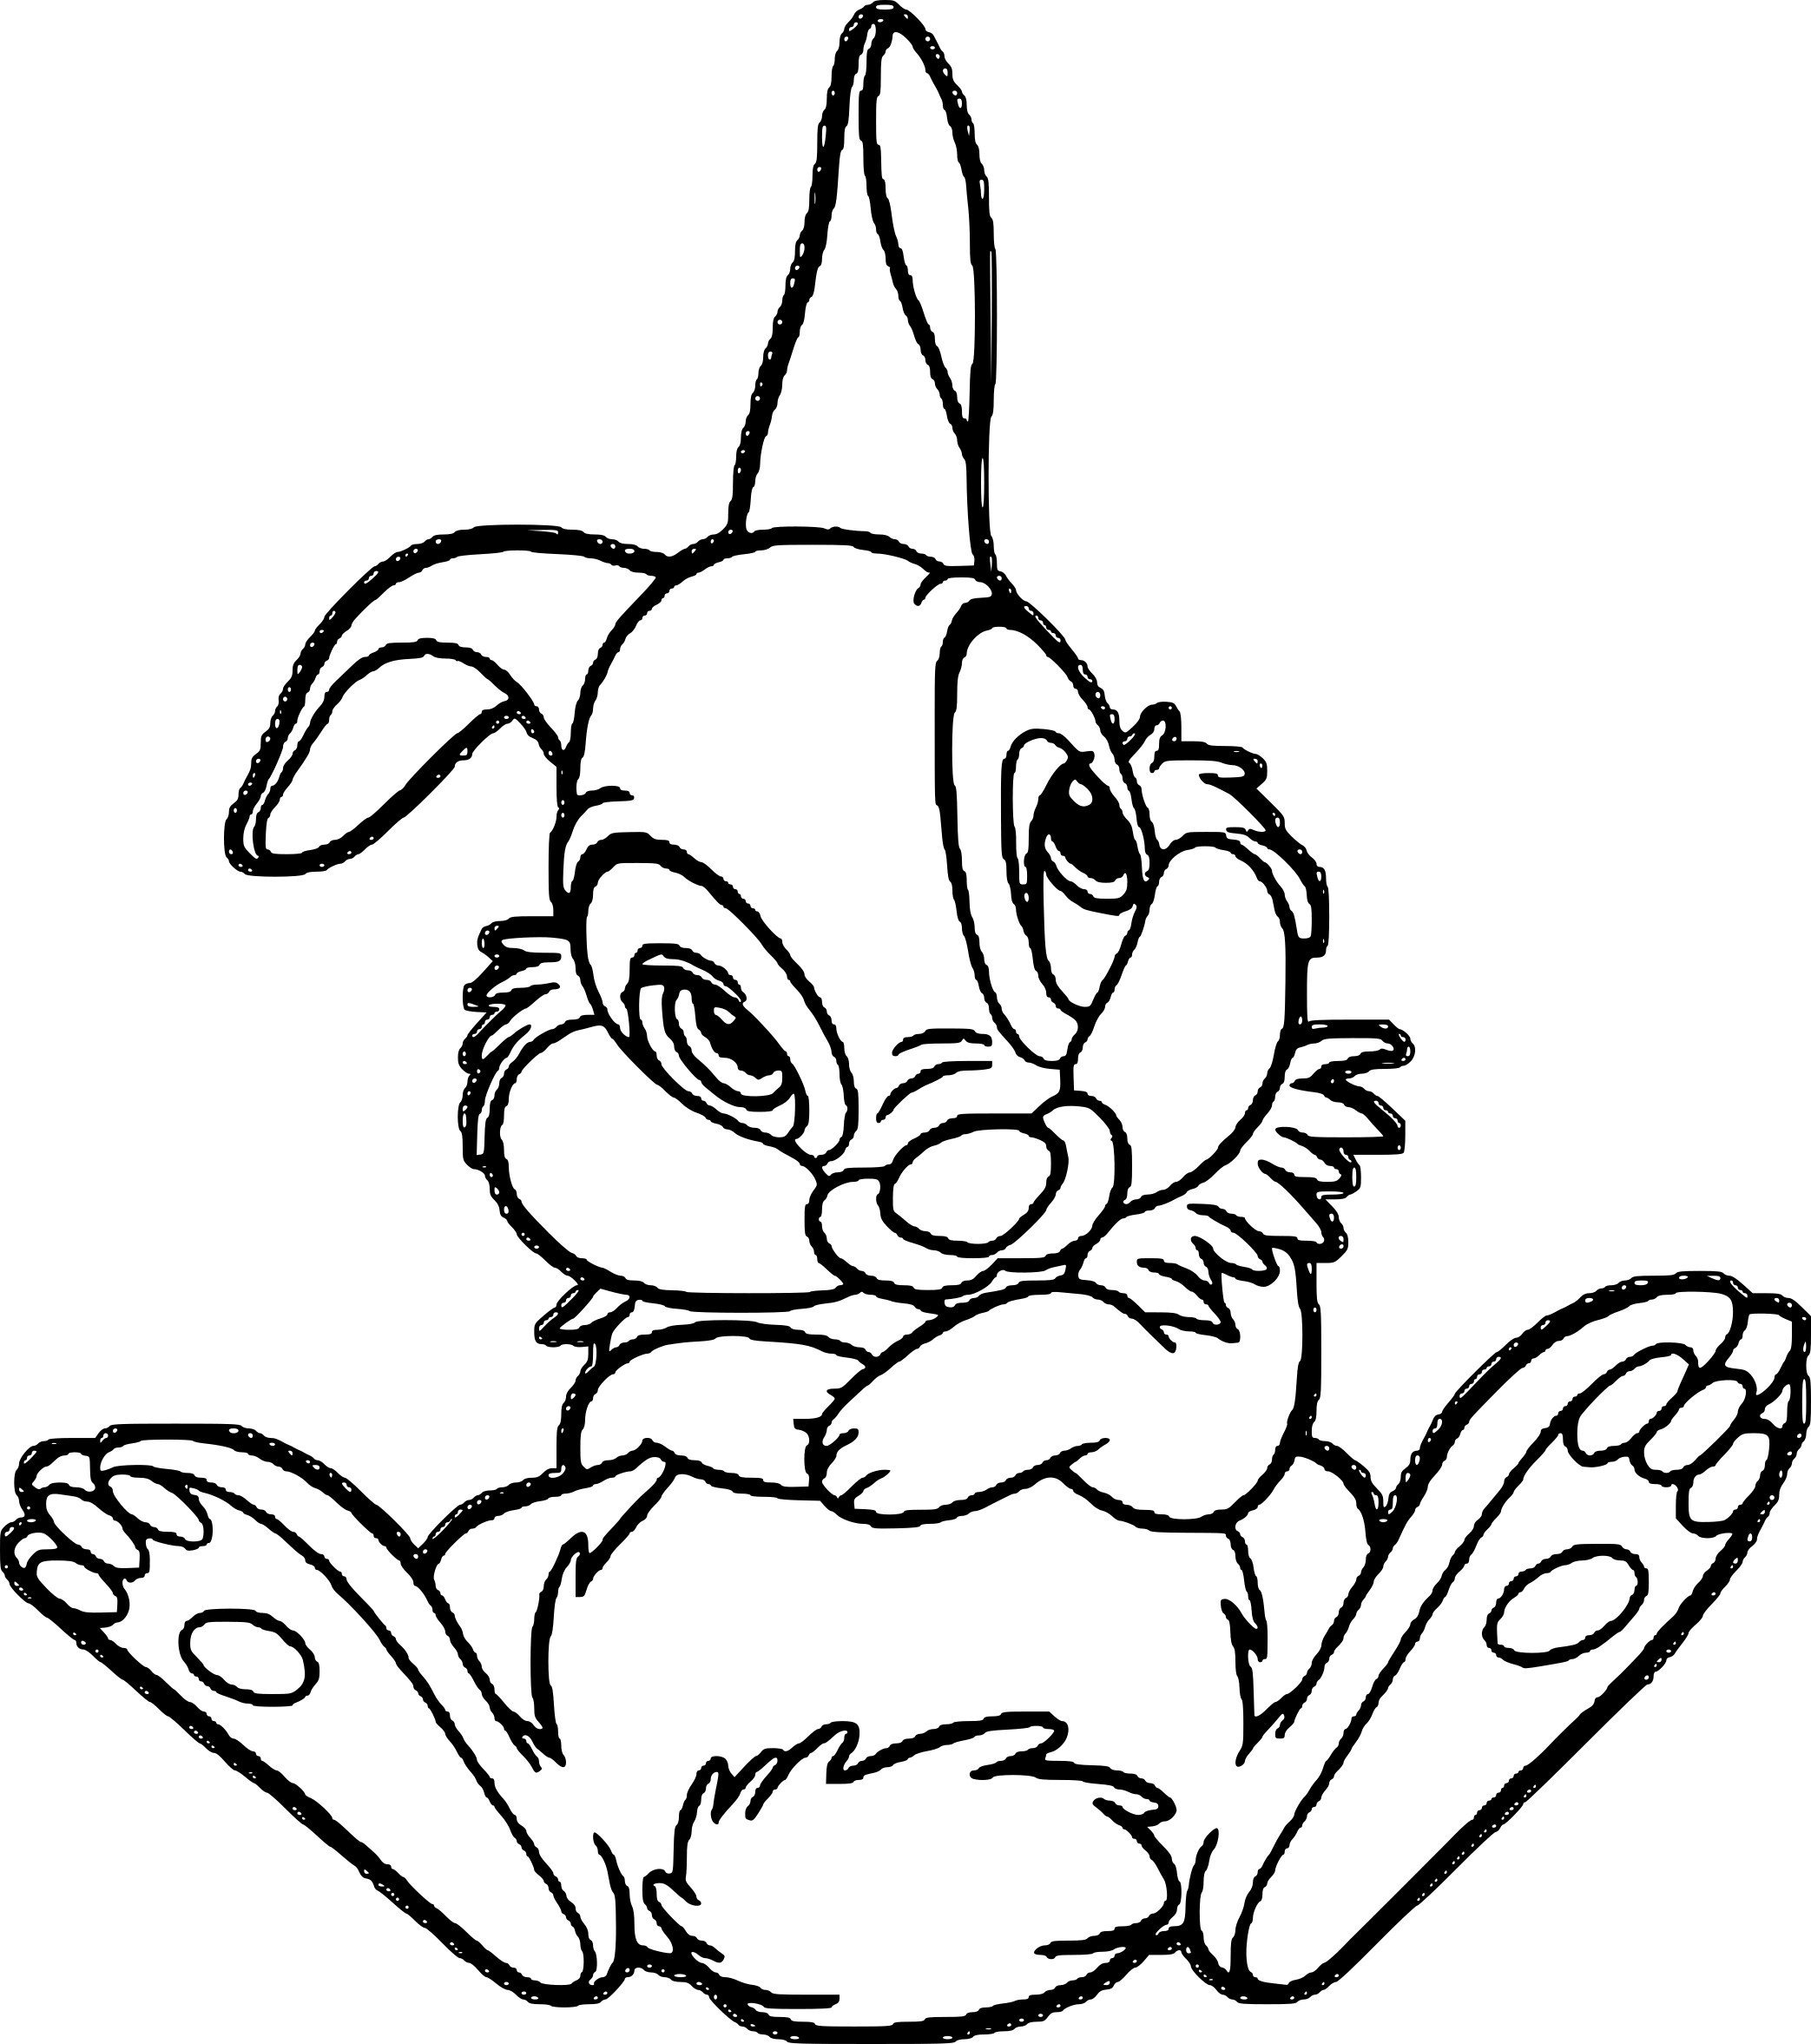 Рисунок кролика с длинными ушами и длинными усами.